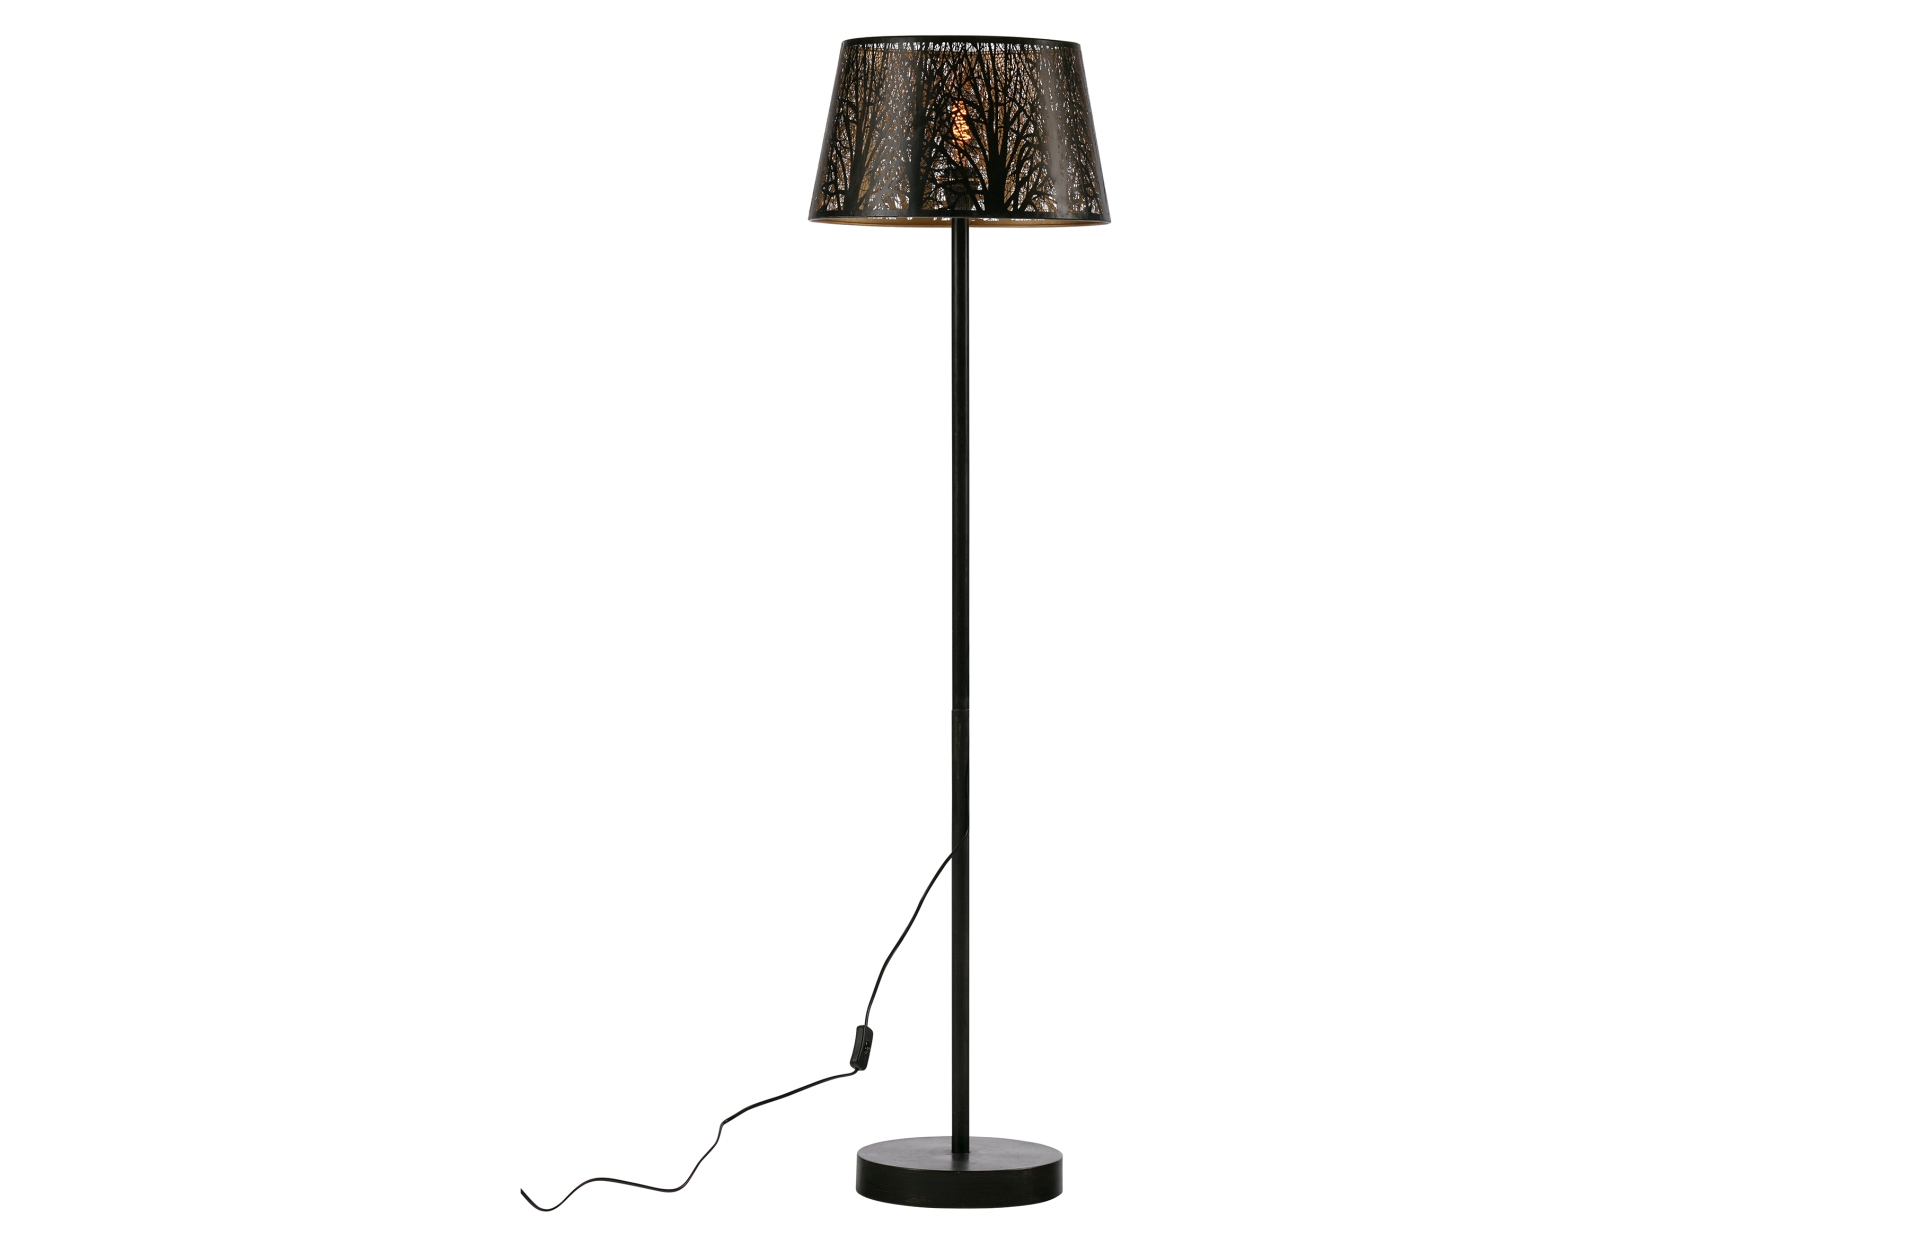 Die Stehleuchte Keto ist ein echter Hingucker. Gefertigt wurde die Lampe aus Metall, welches ein schwarzen Farbton besitzt. Dies unterstreicht das moderne Design der Lampe.